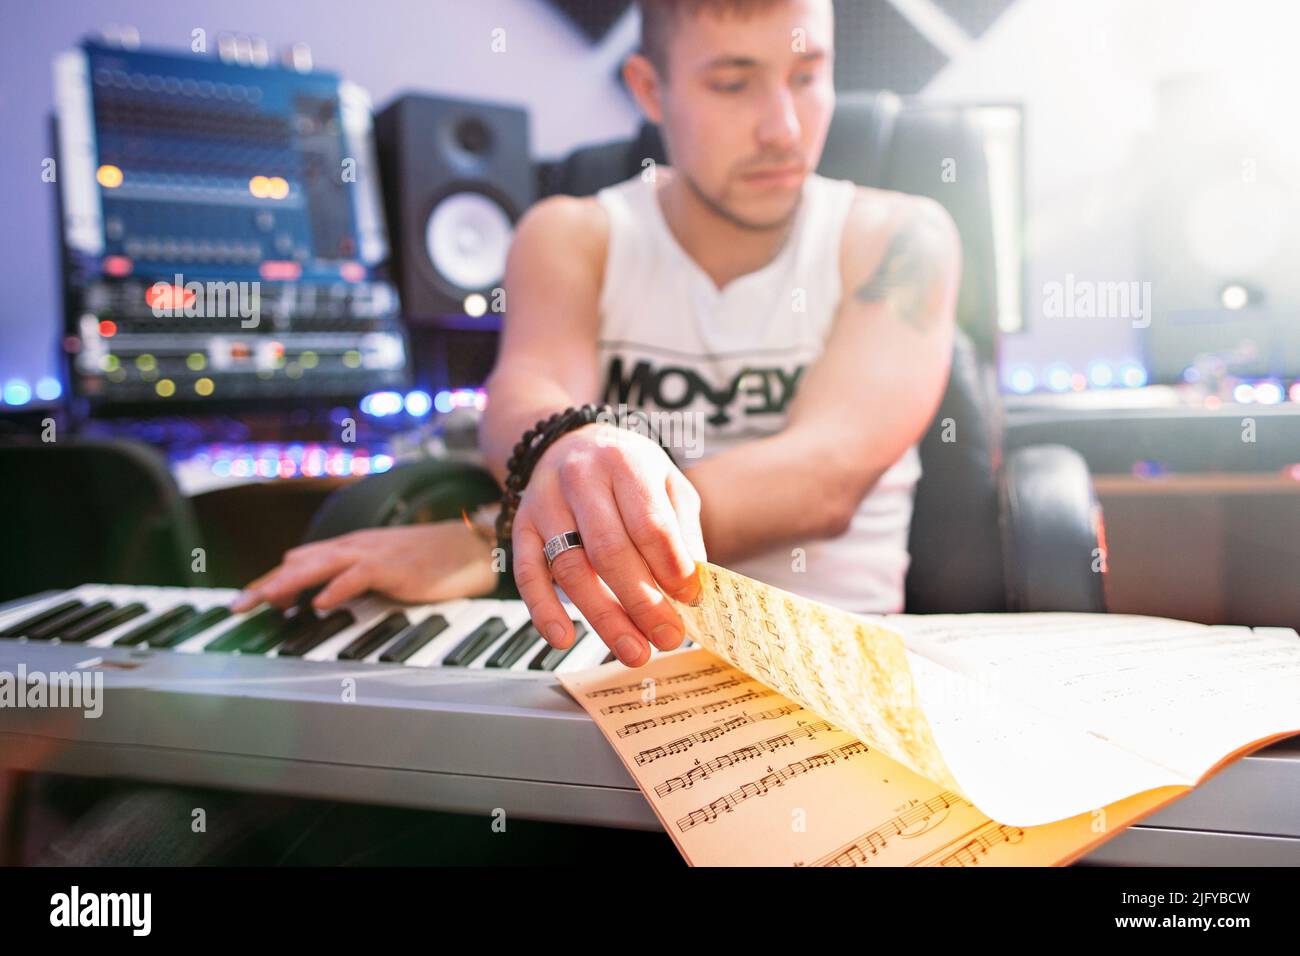 DJ create piano music in recording studio Stock Photo